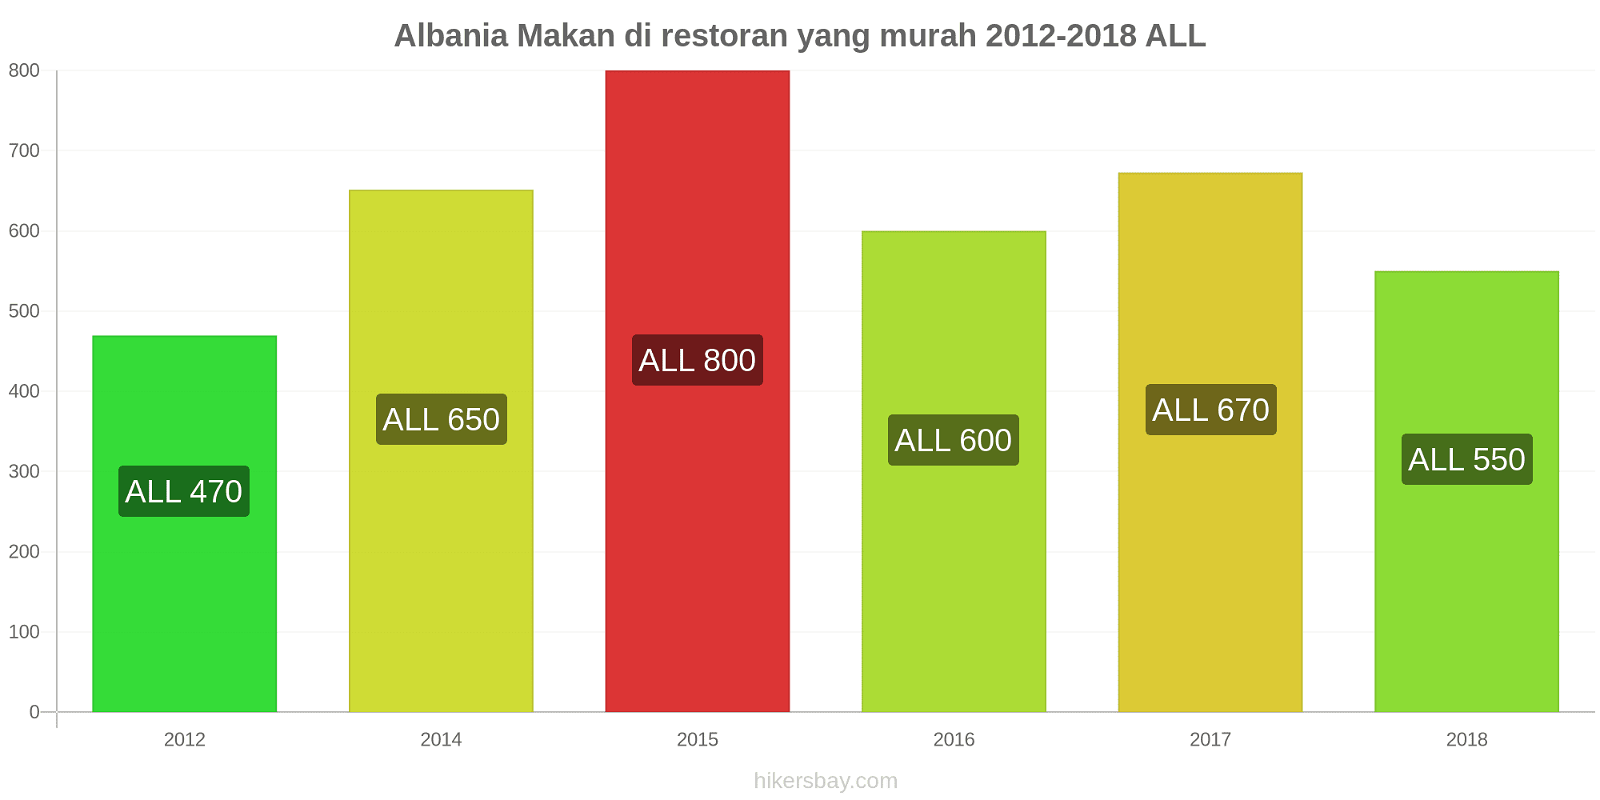 Albania perubahan harga Makan di restoran yang terjangkau hikersbay.com